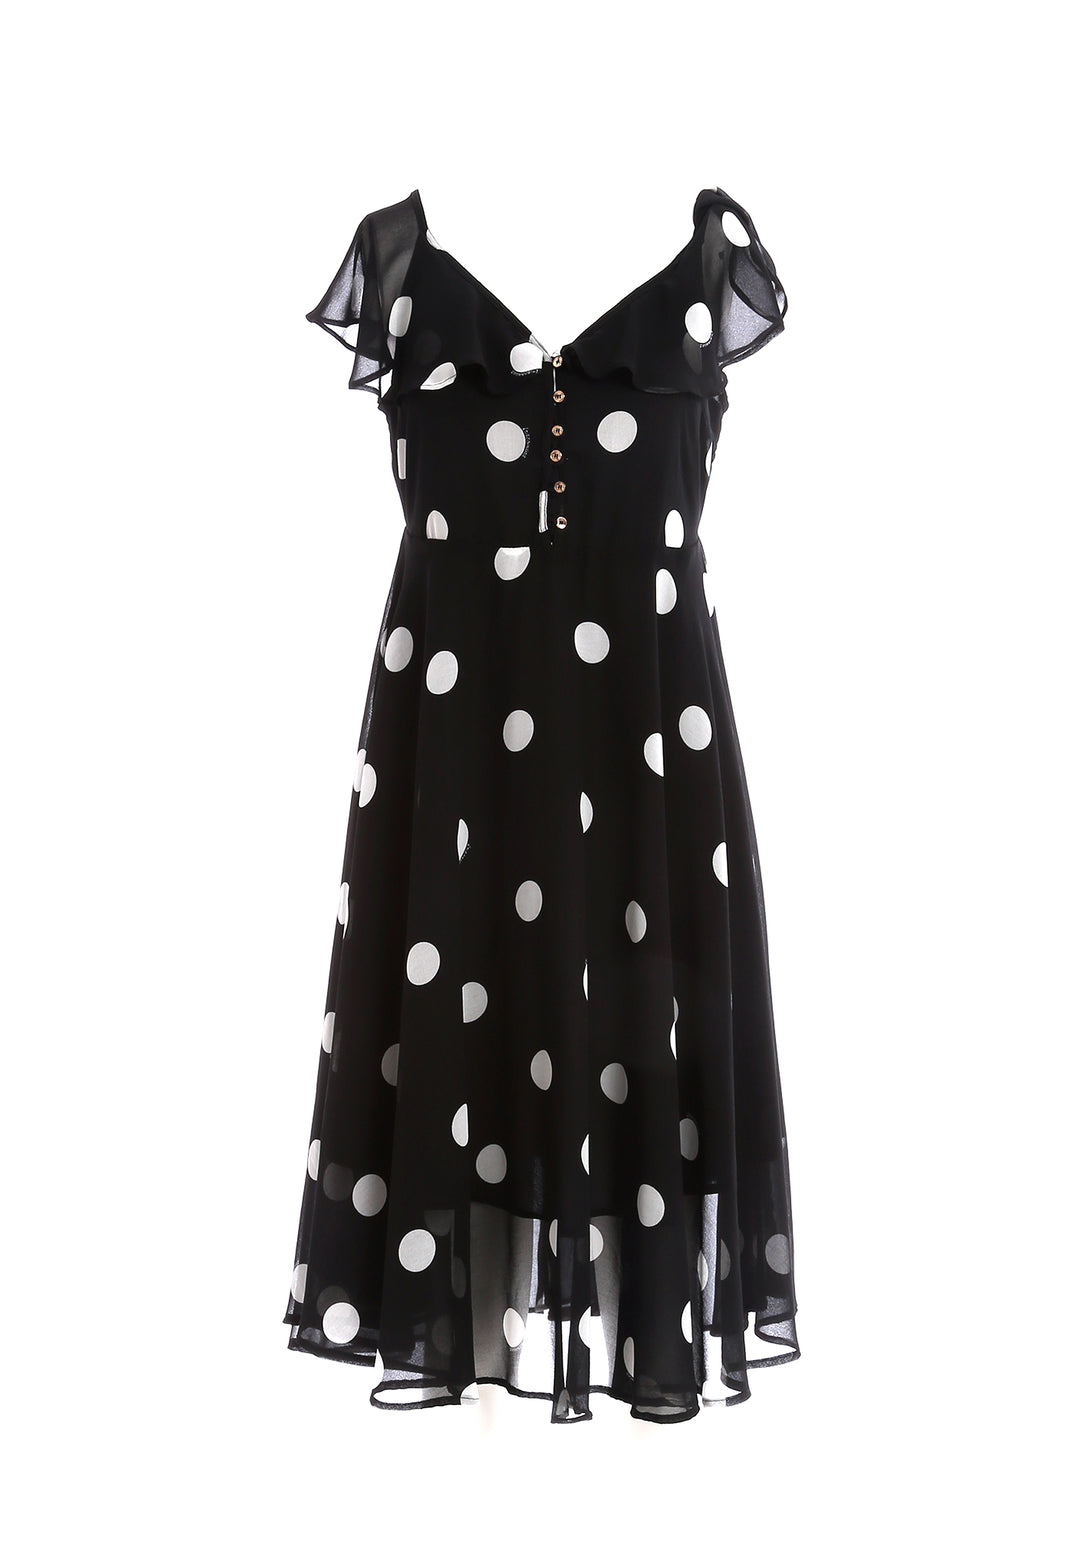 Mini dress straight fit with polka dots pattern